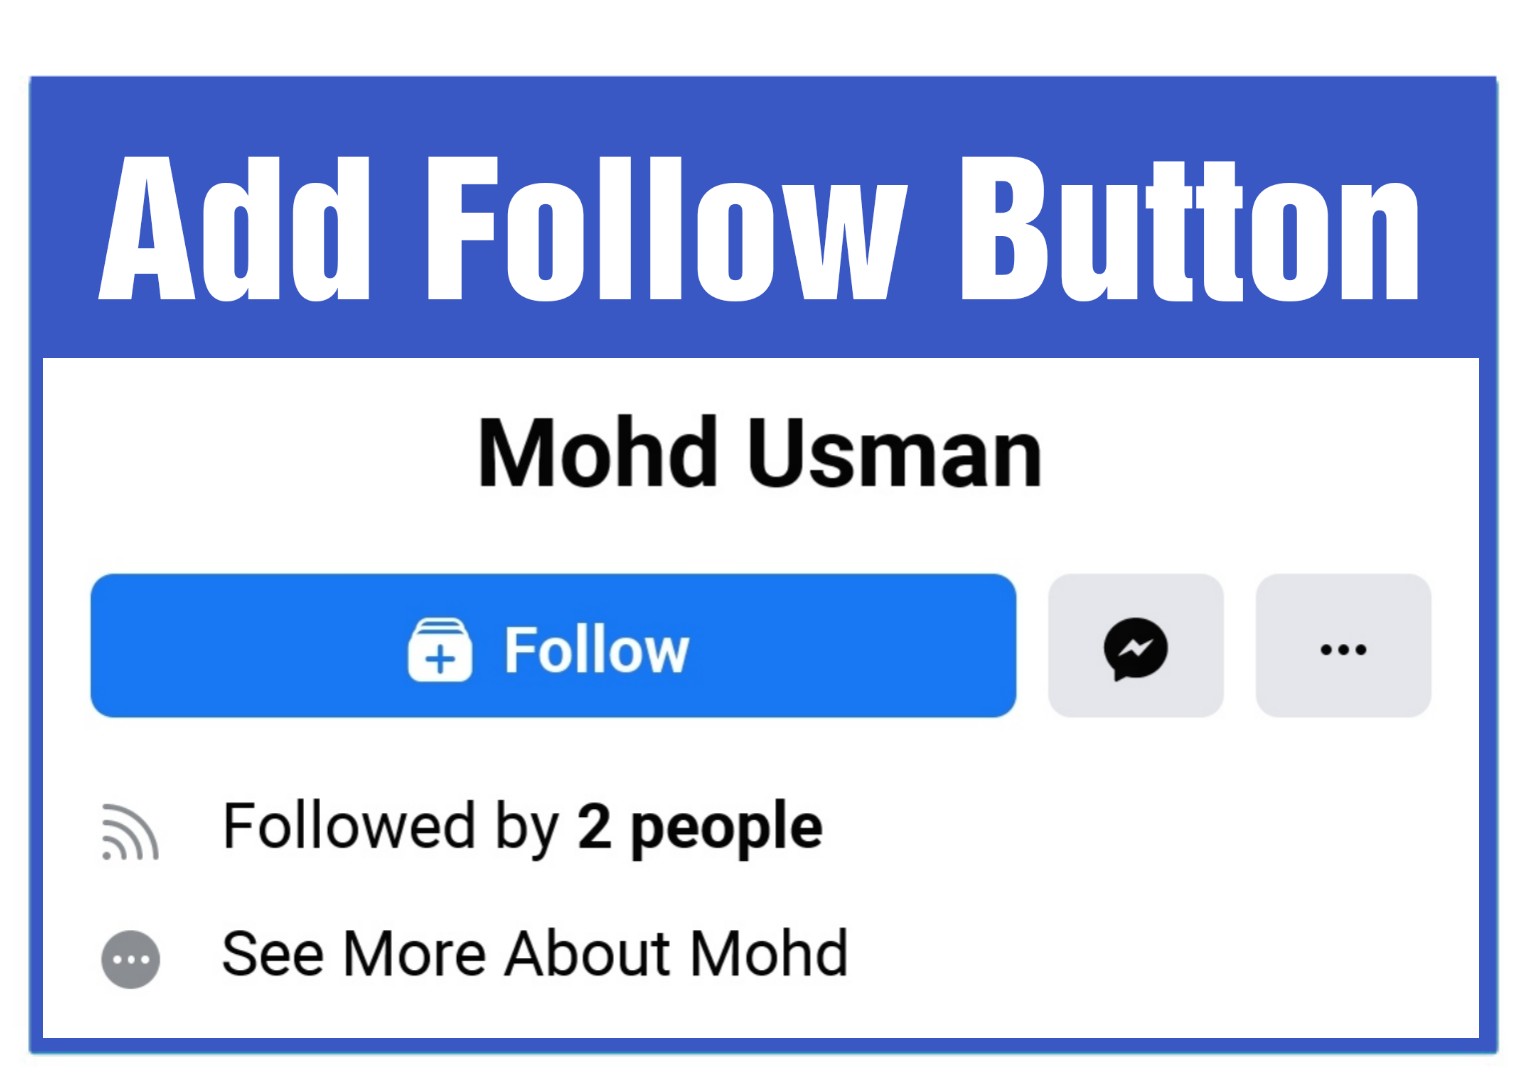 Follow buttons